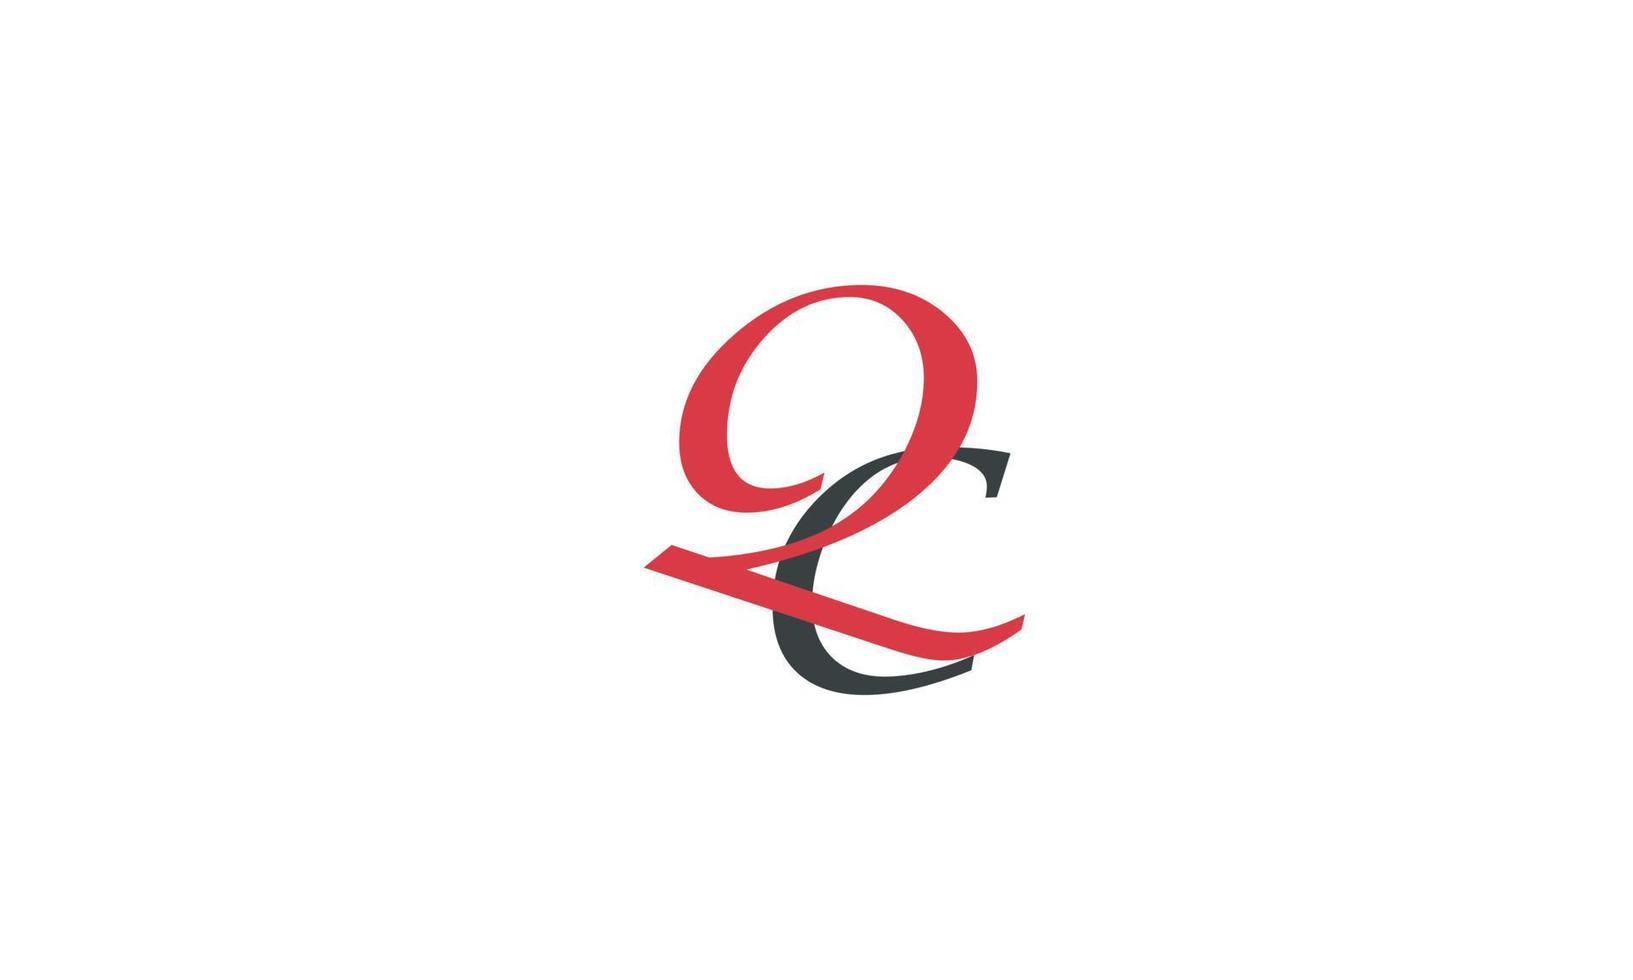 letras do alfabeto iniciais monograma logotipo qc, cq, q e c vetor